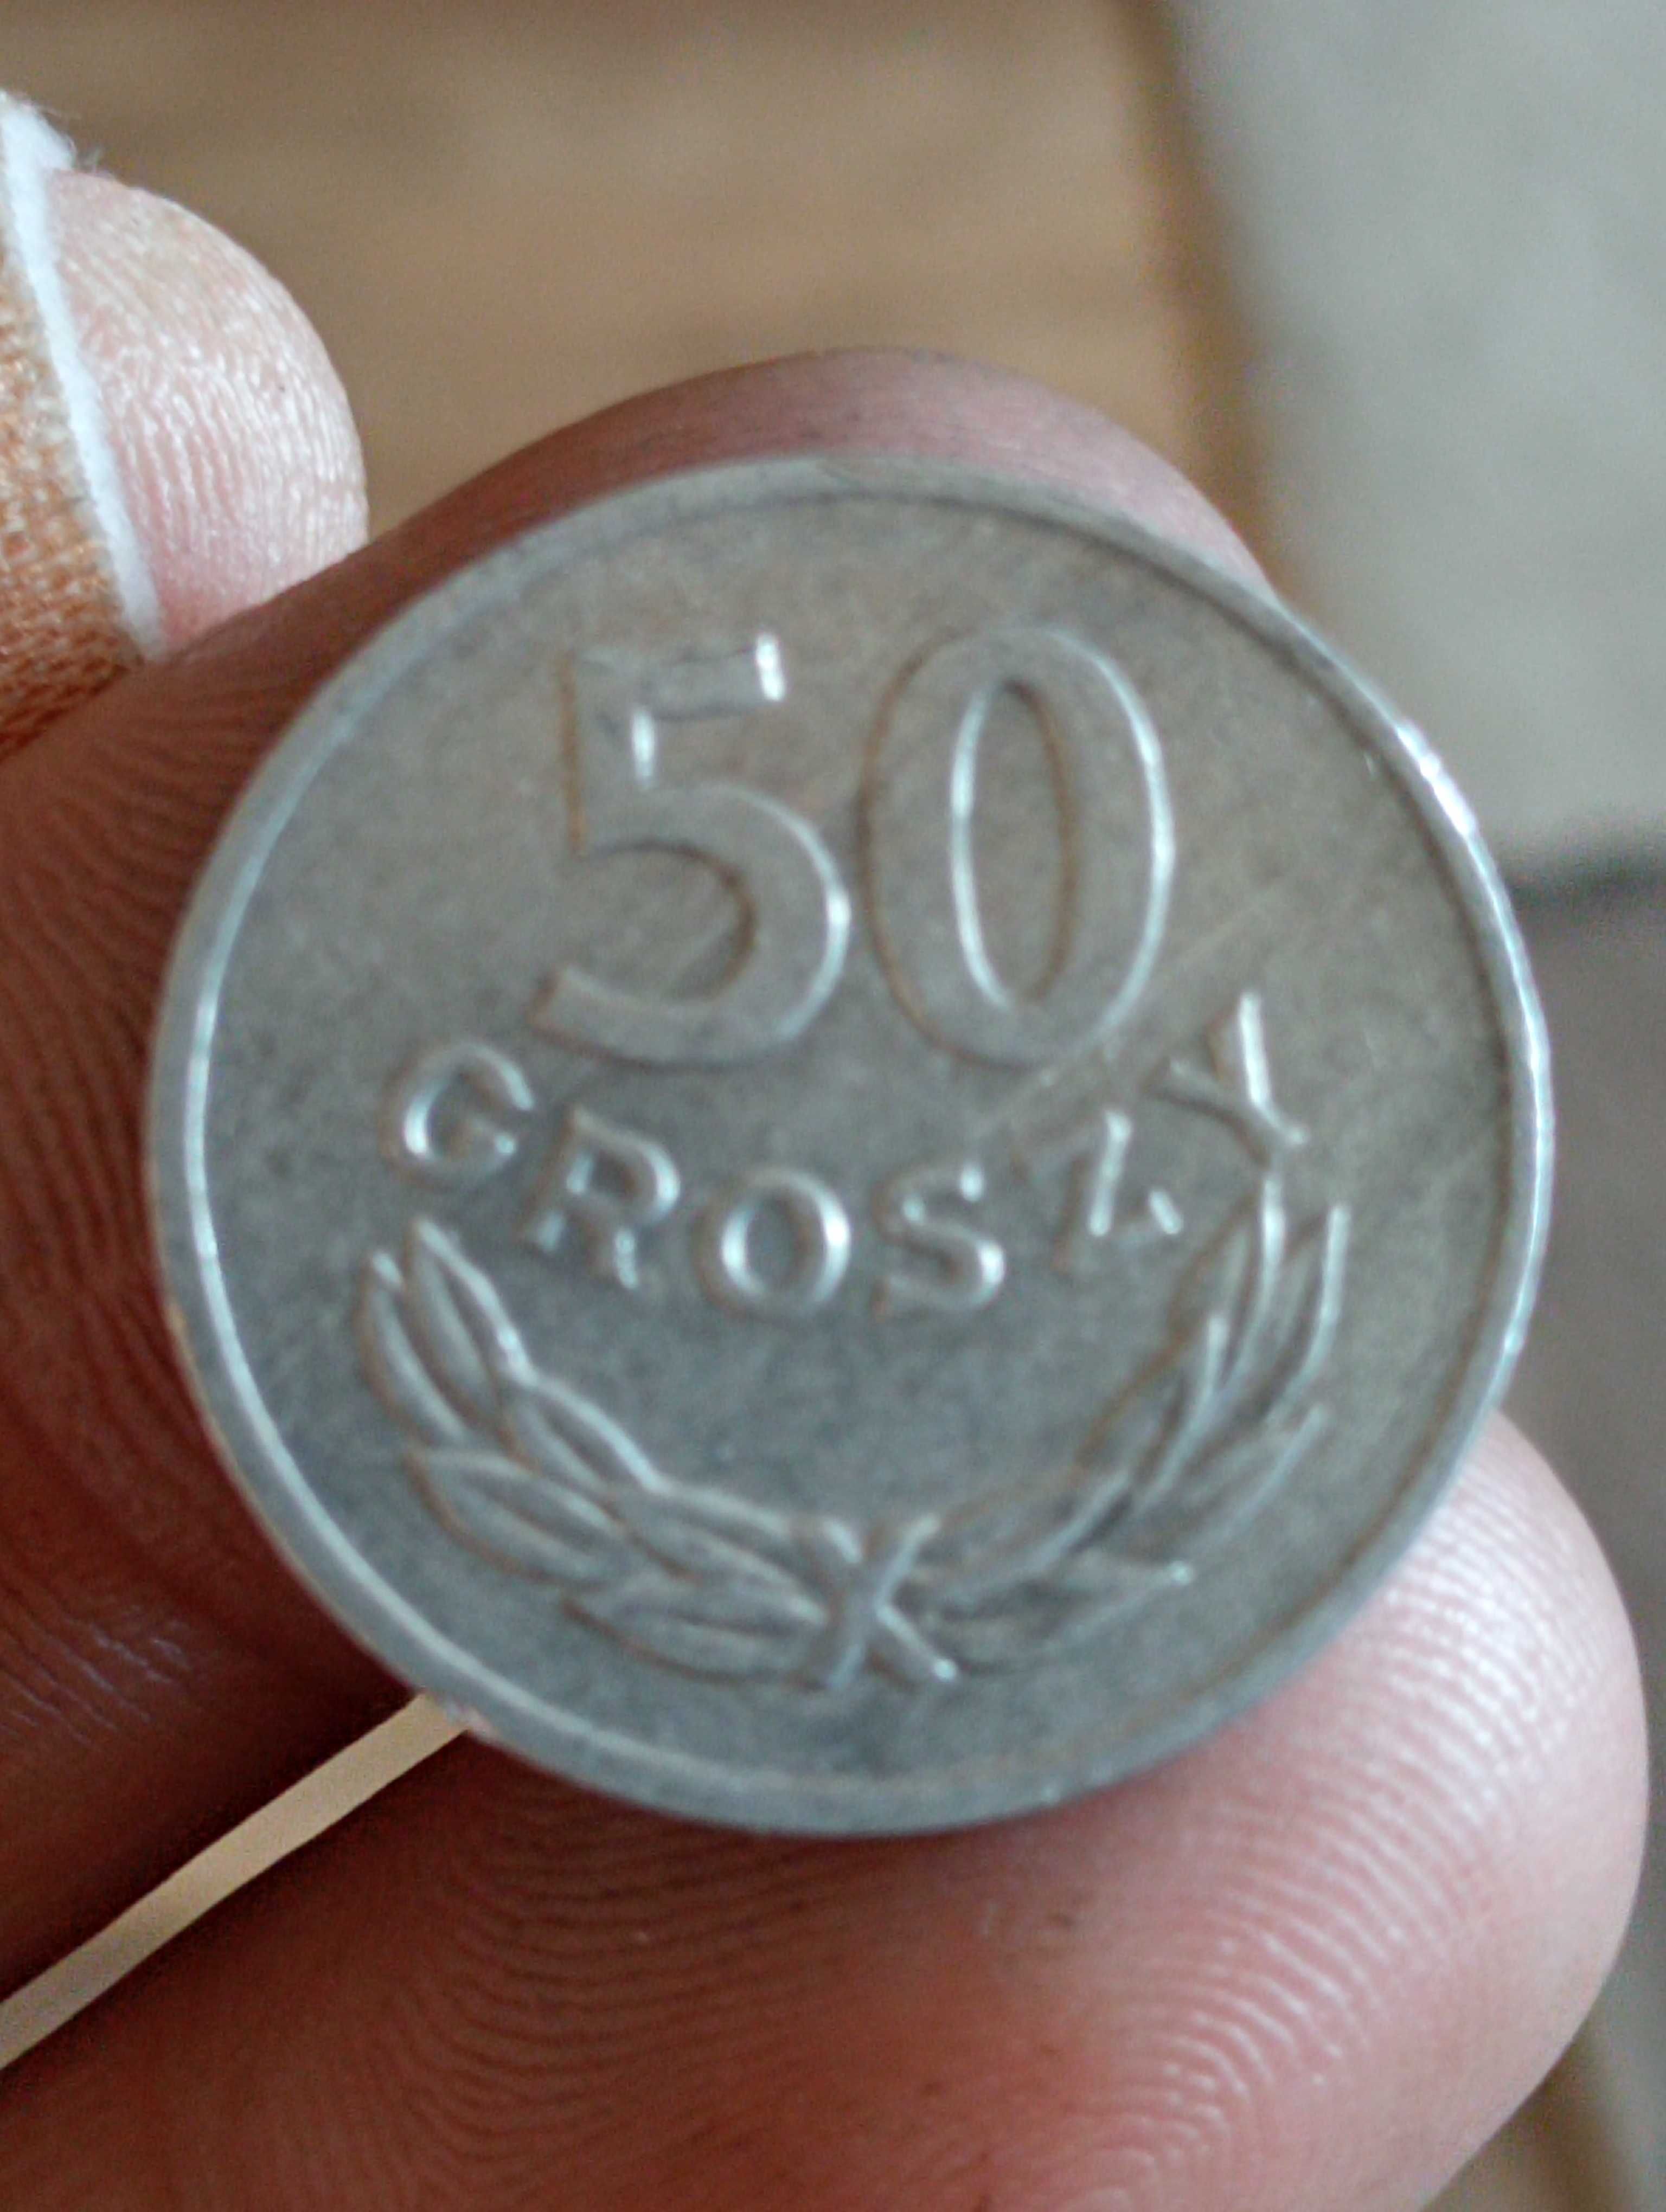 Sprzedam monete cz 50 groszy 1973 r